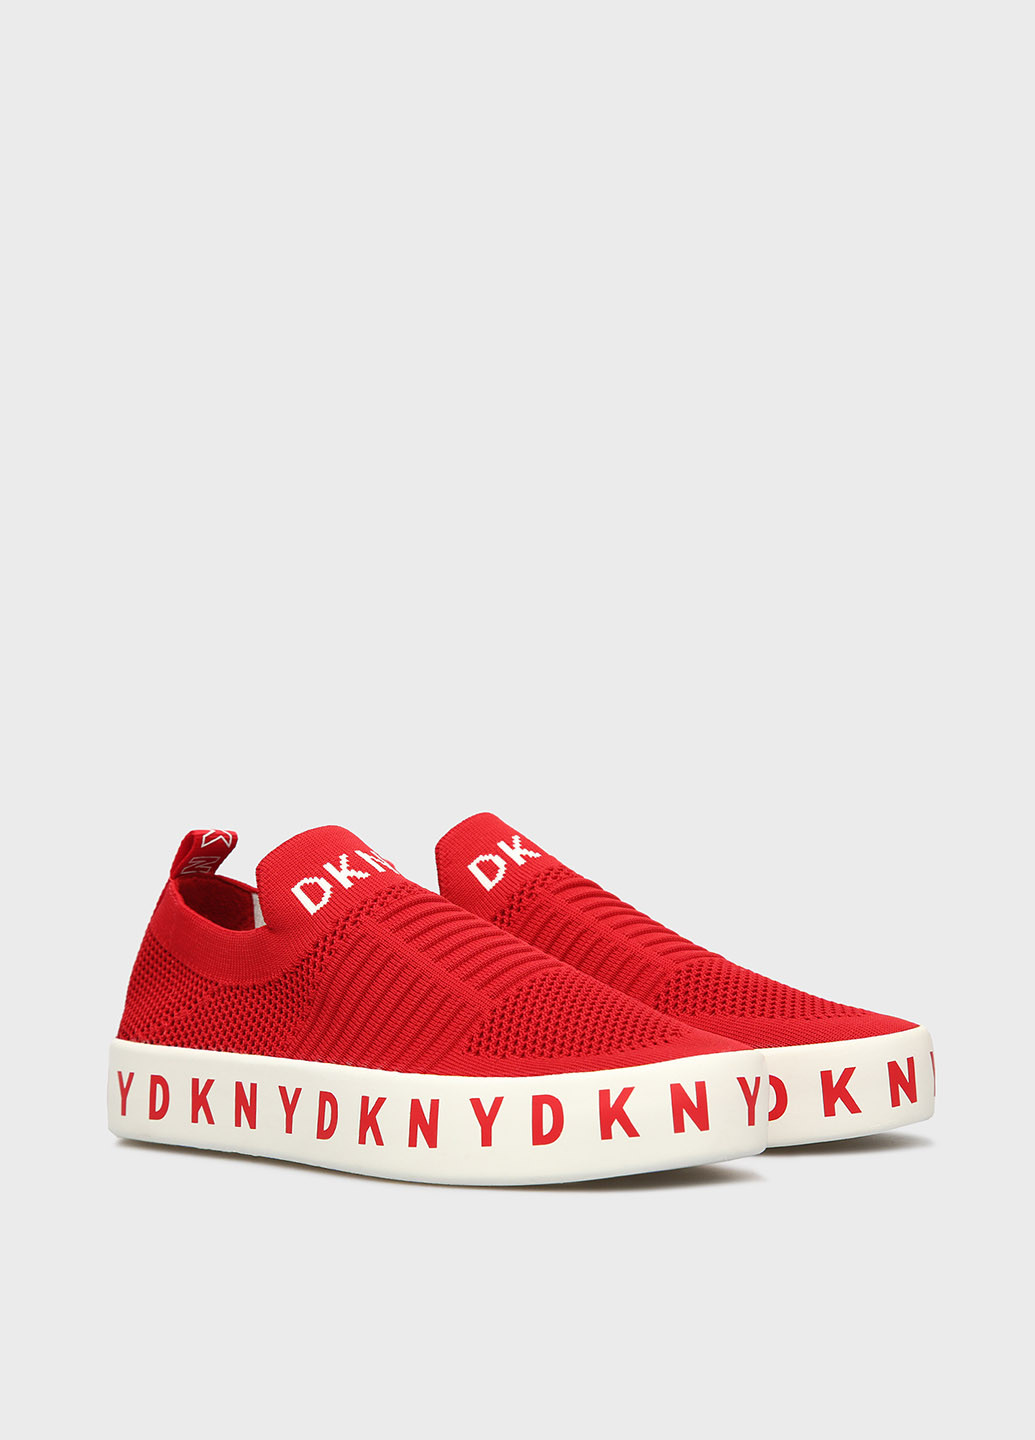 Красные слипоны DKNY с надписью